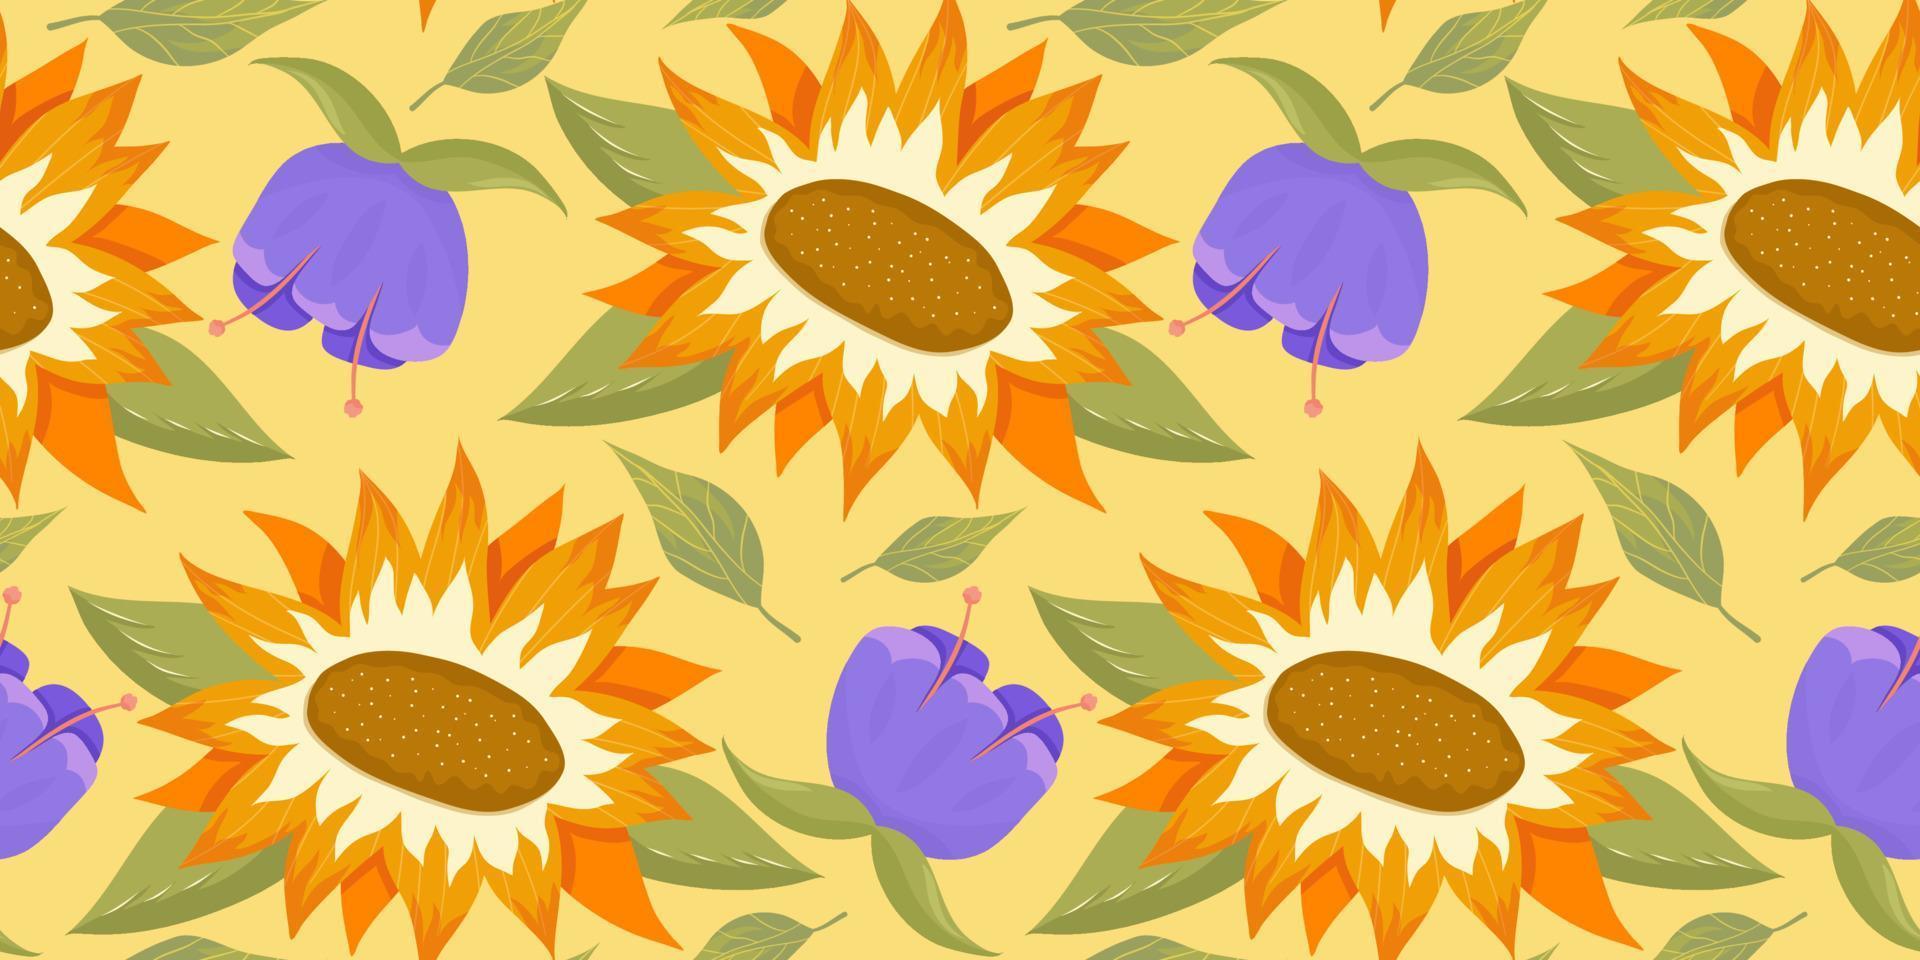 zonnebloem naadloos patroon met bloem, blad. cartoon gele afbeelding. naadloze bloemmotief. zomer helder bloemdessin. vector illustratie